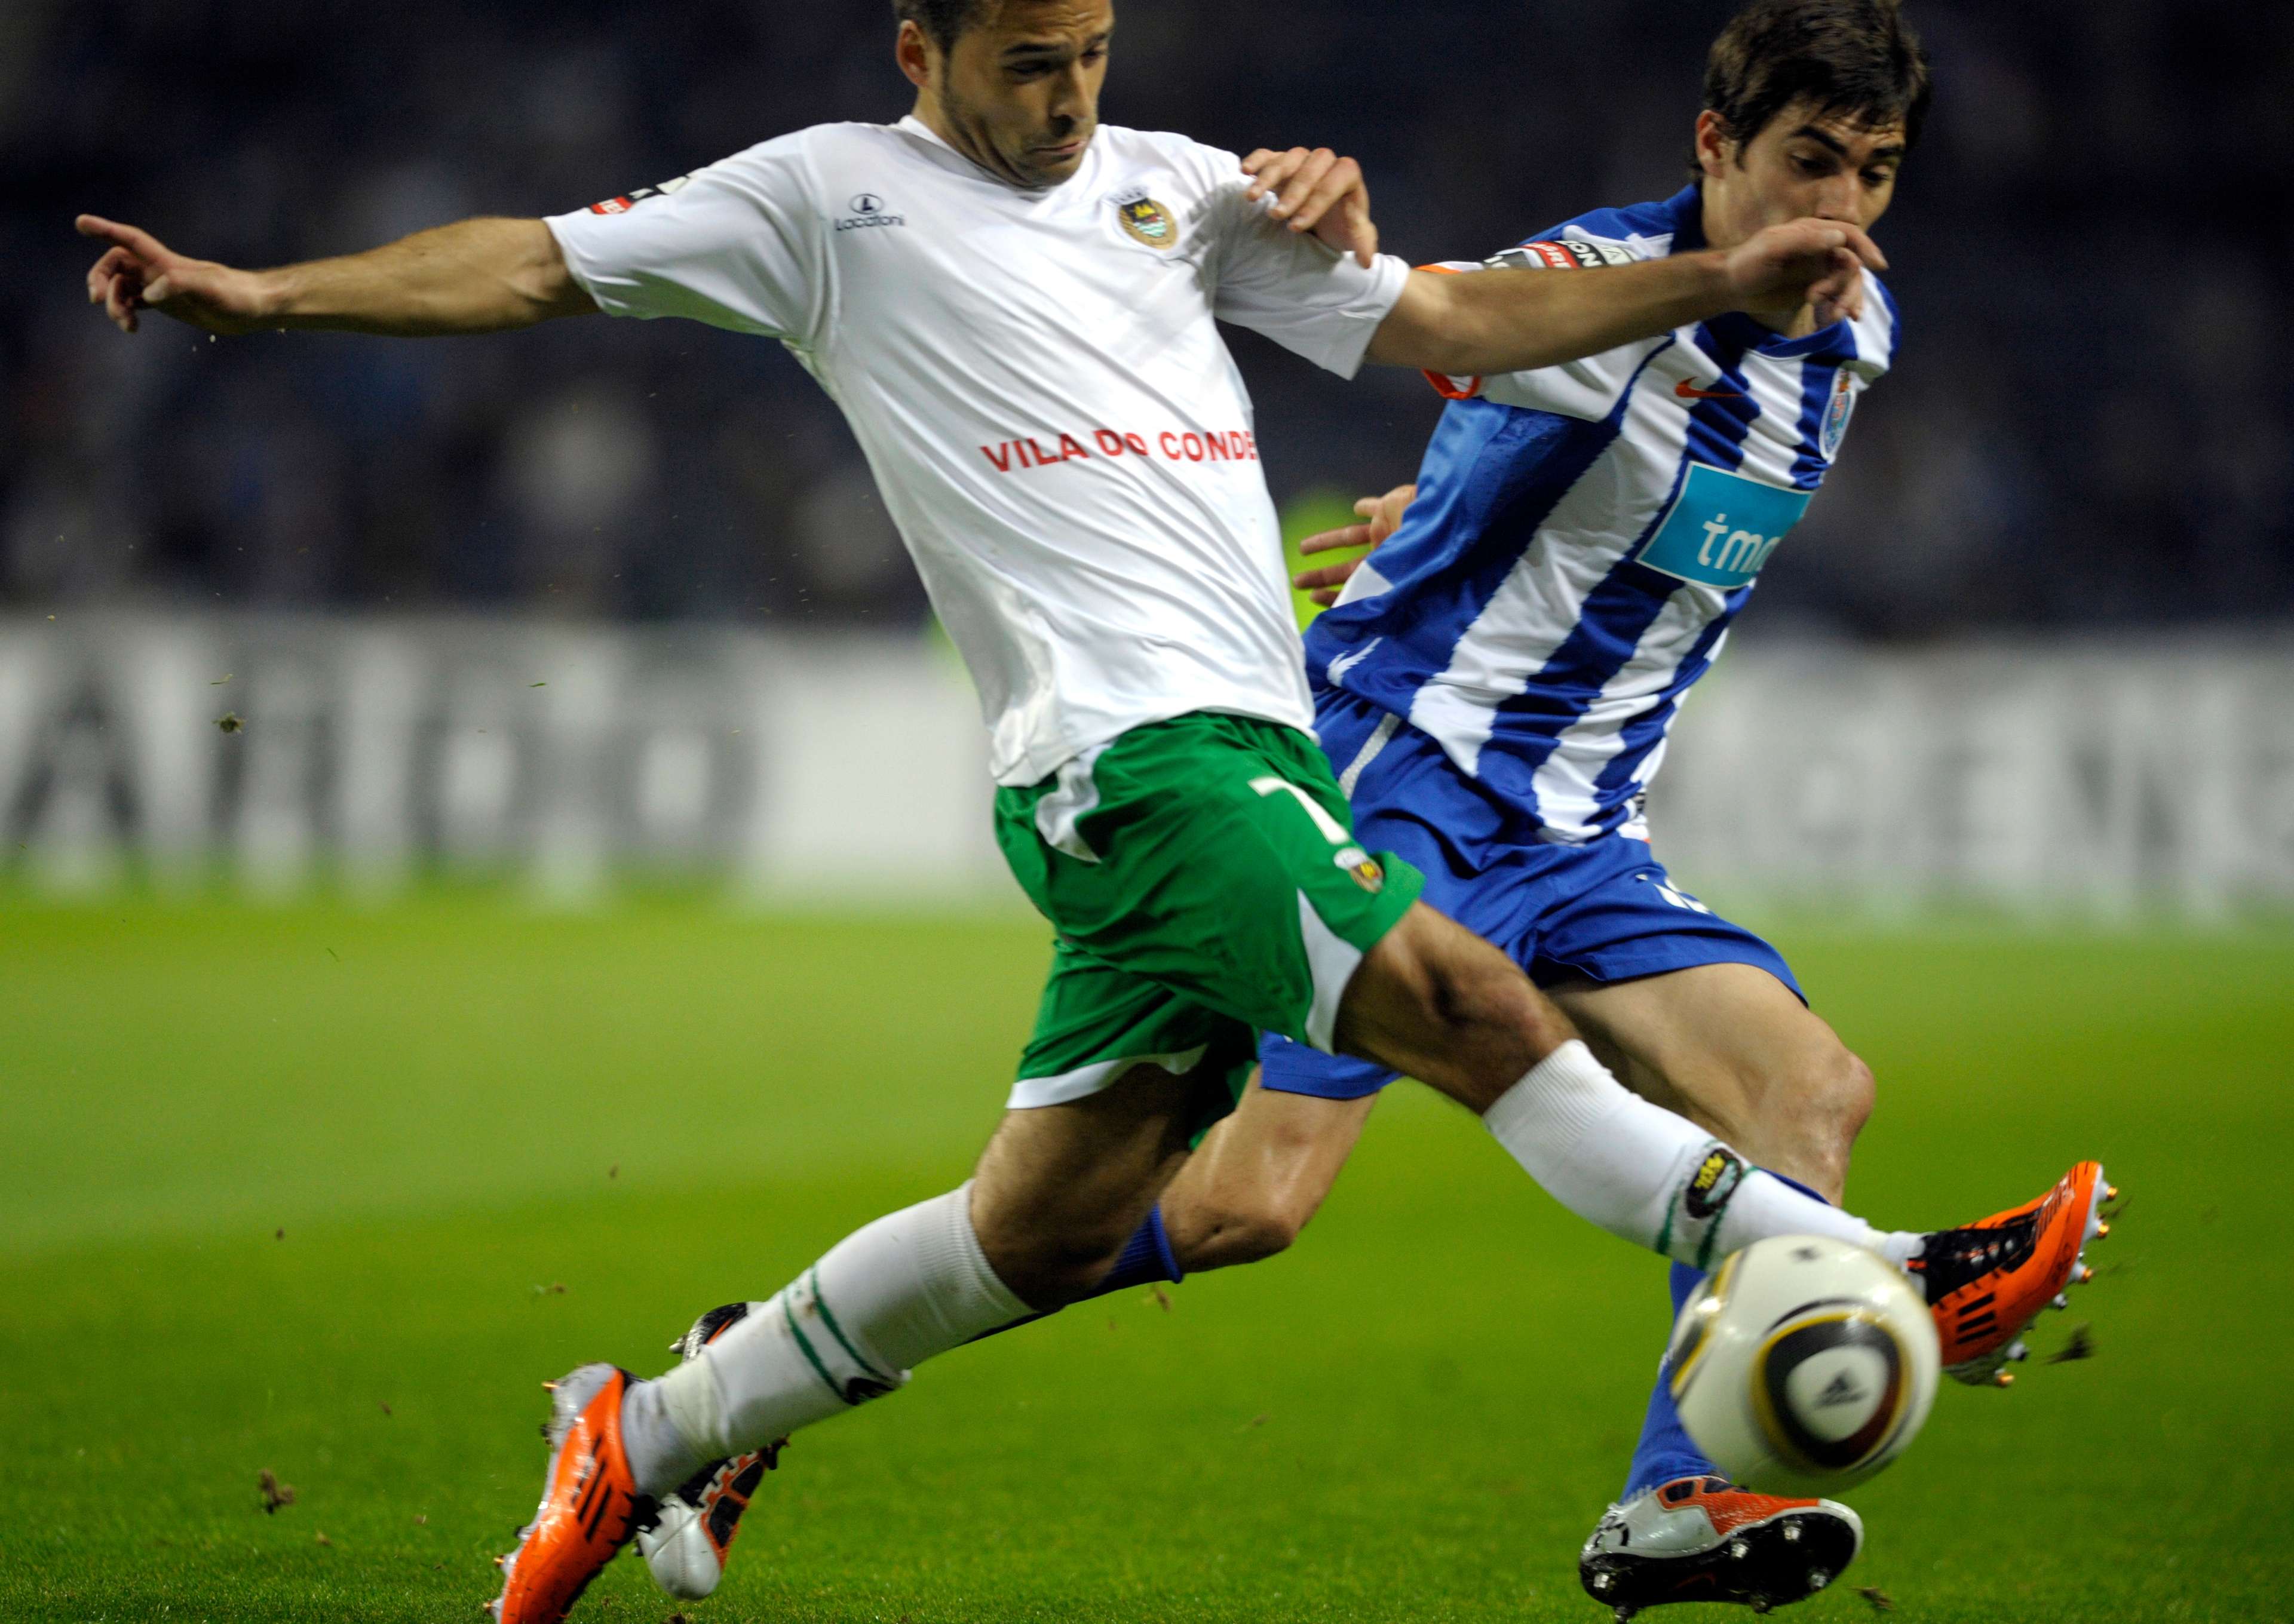 Henrique Sereno at FC Porto